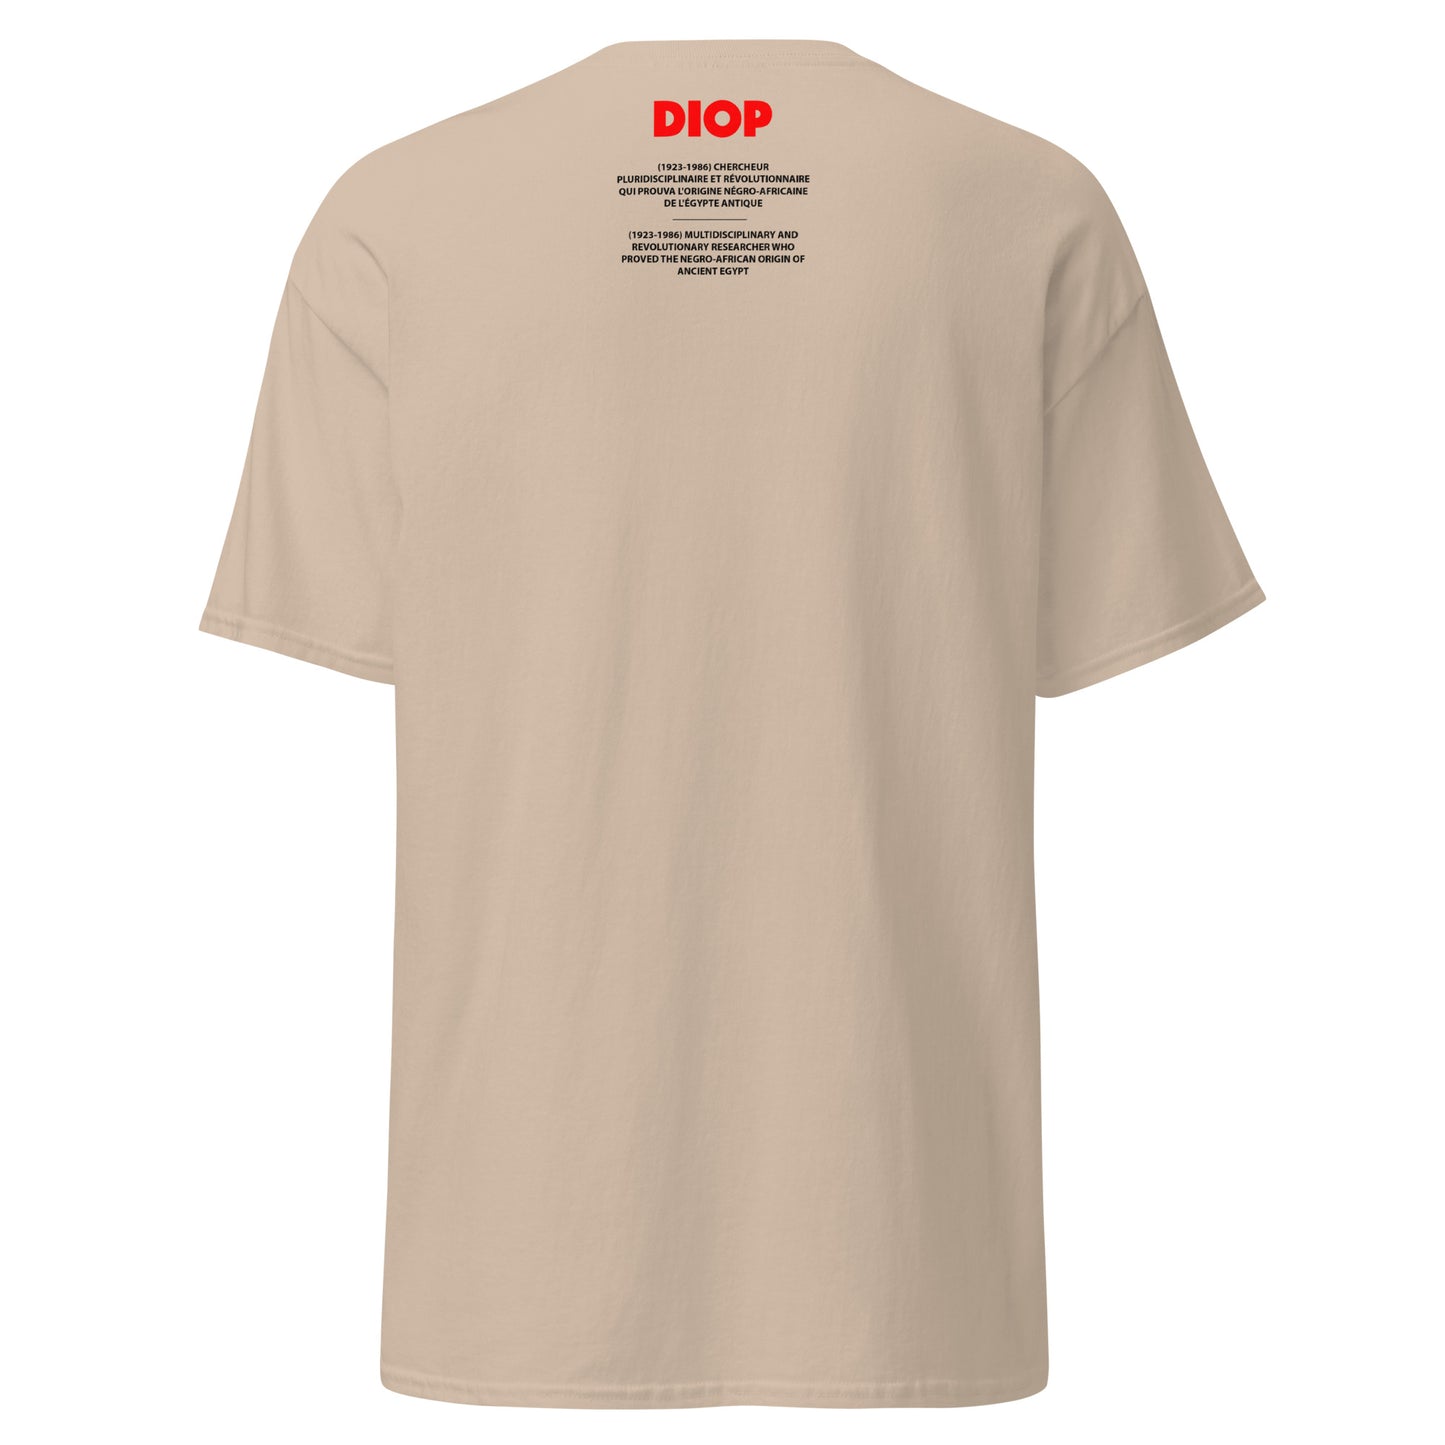 DIOP (T-Shirt Miroir)